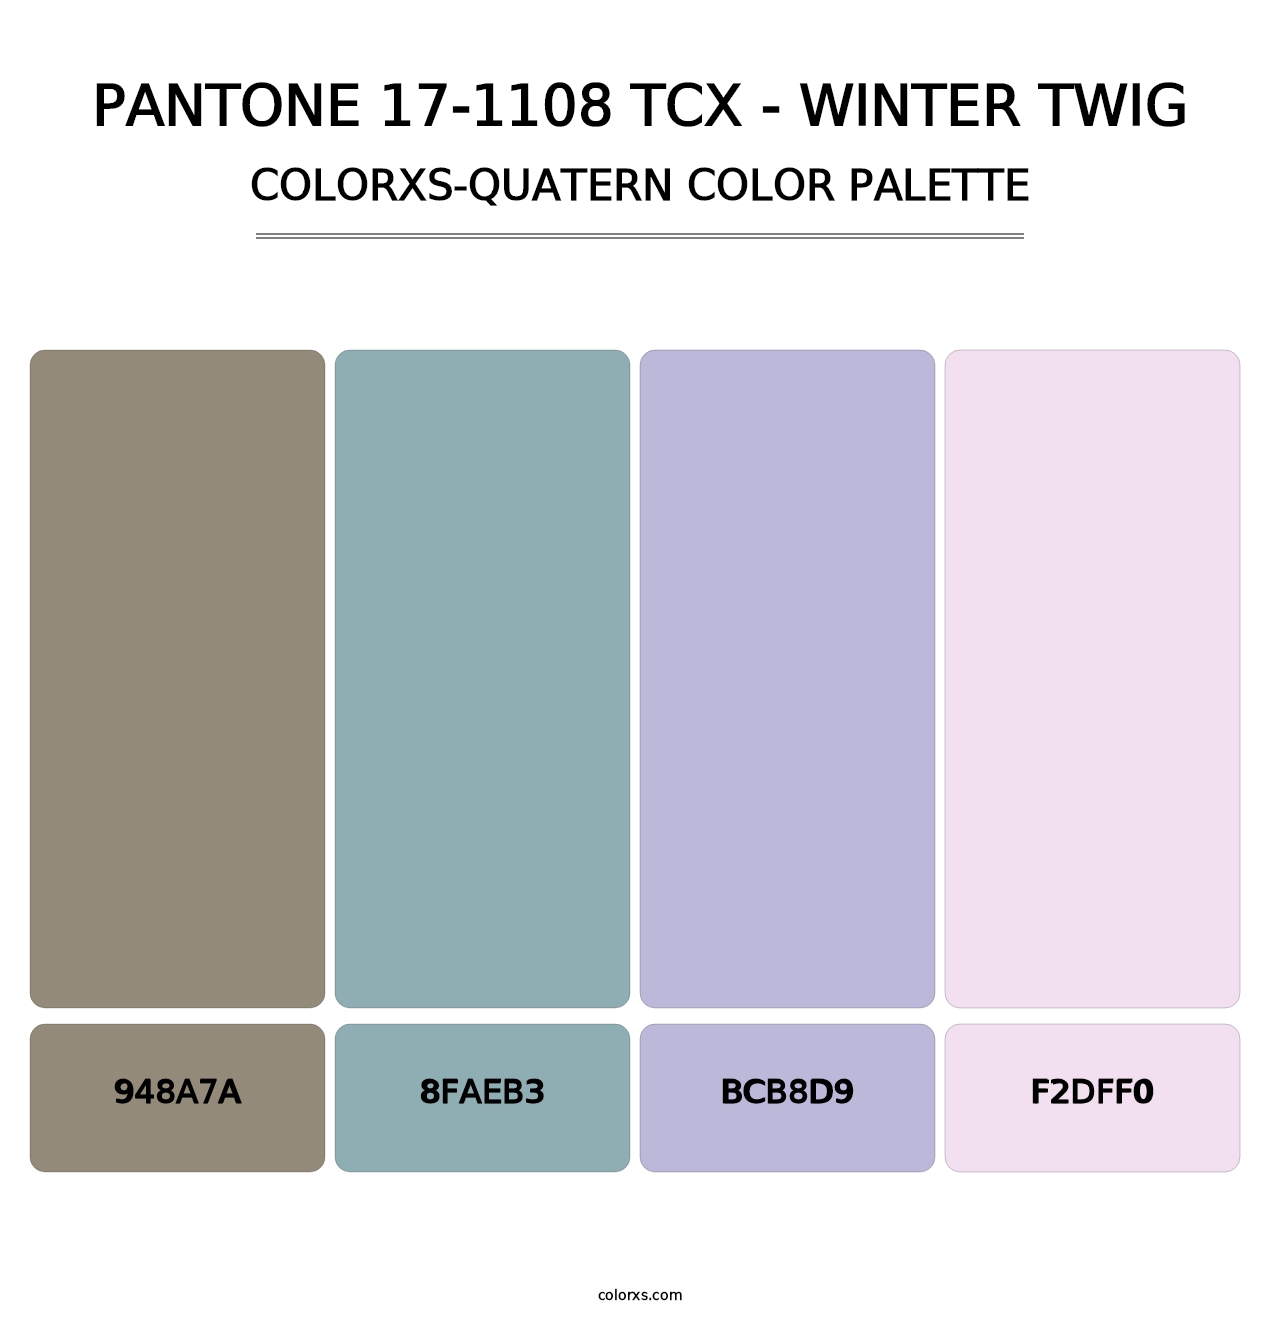 PANTONE 17-1108 TCX - Winter Twig - Colorxs Quatern Palette